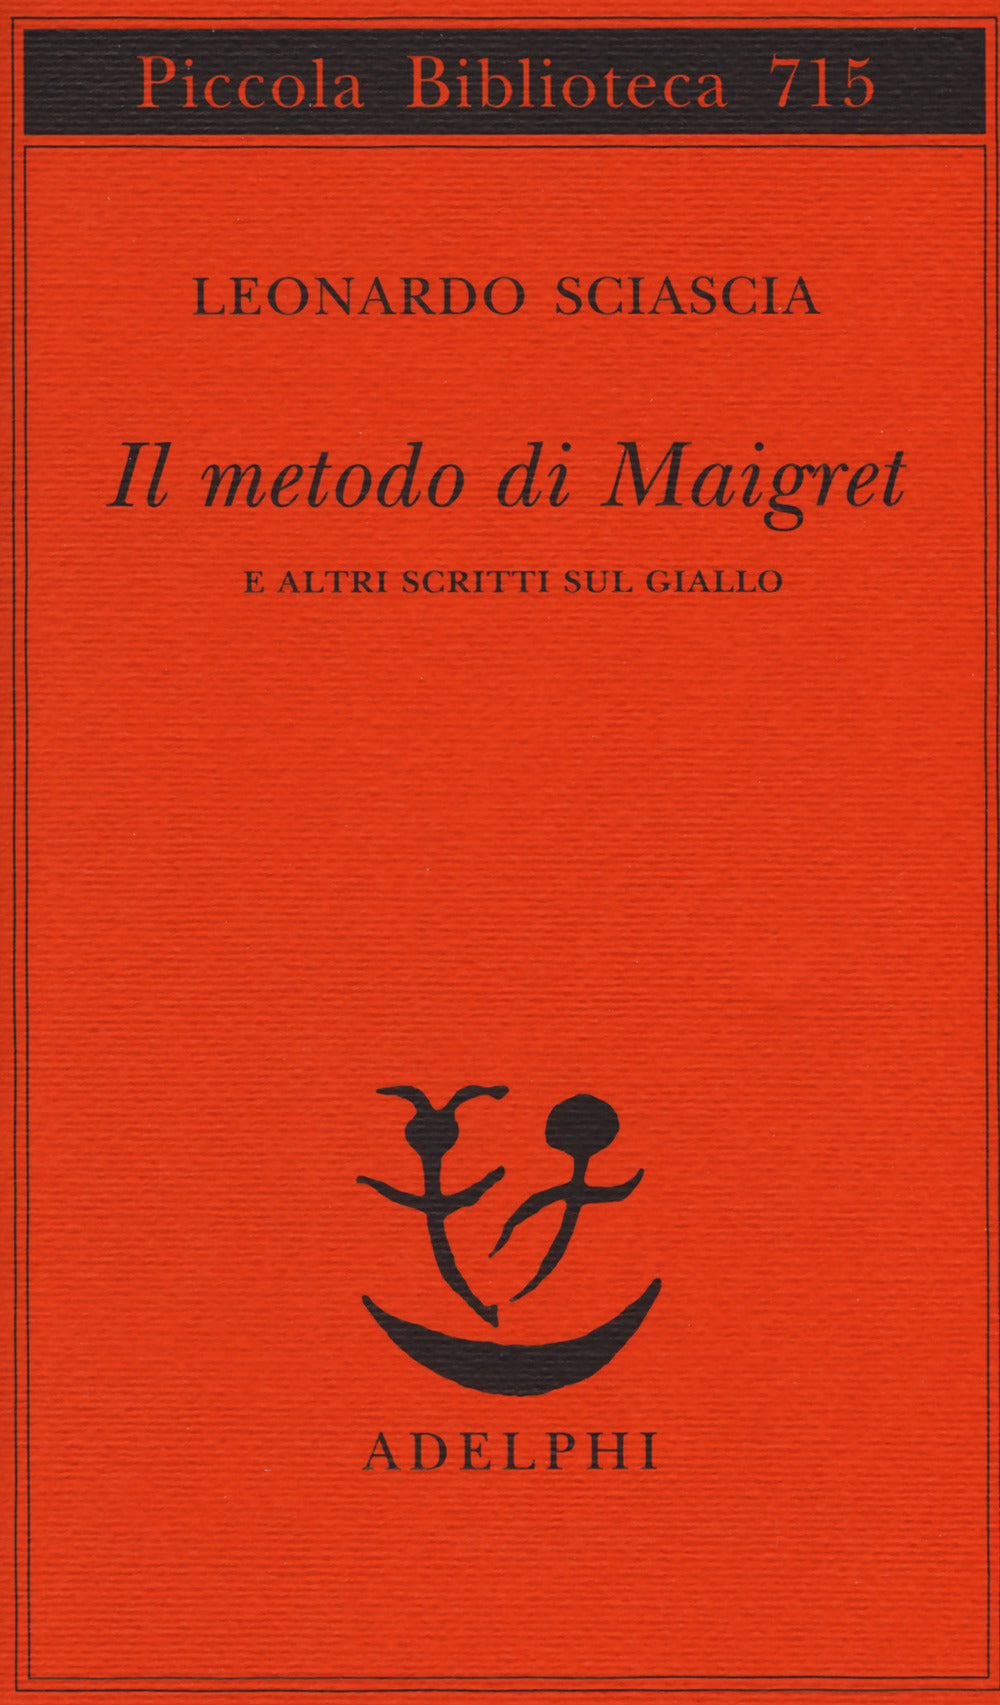 Il metodo di Maigret e altri scritti sul giallo.